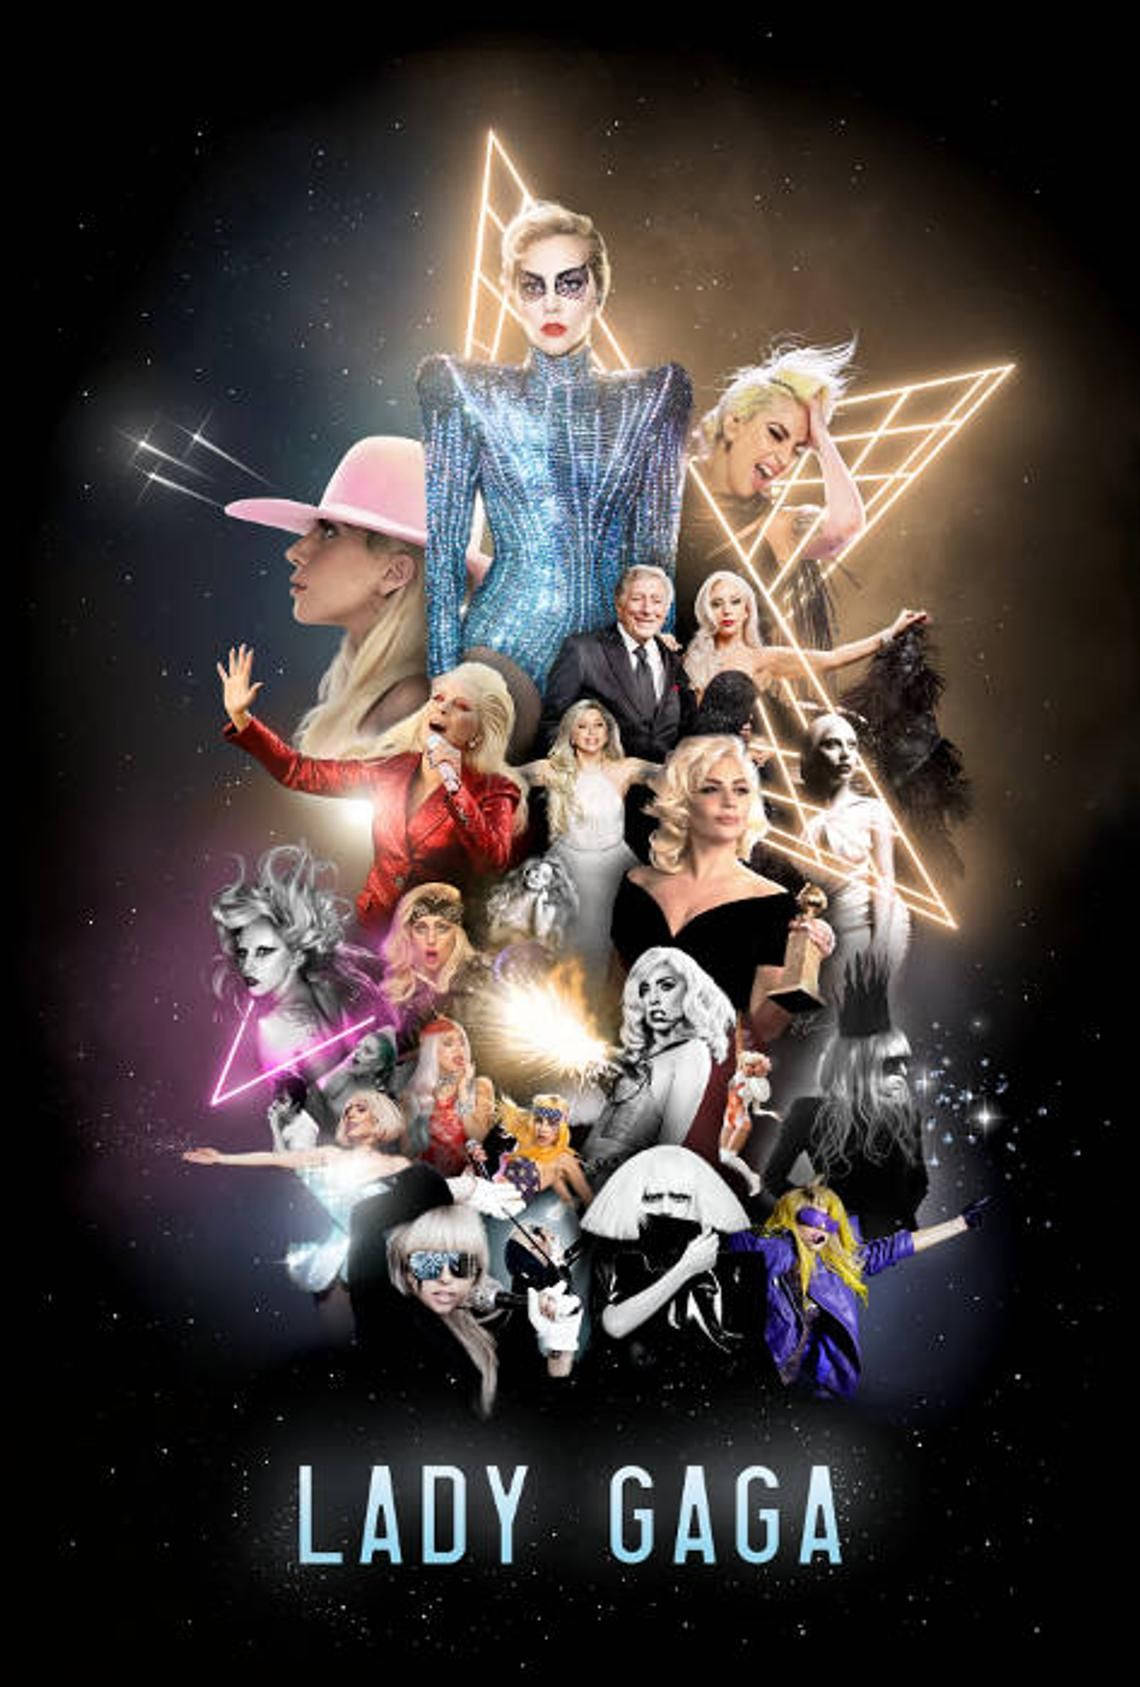 Lady Gaga Eras Collage Wallpaper